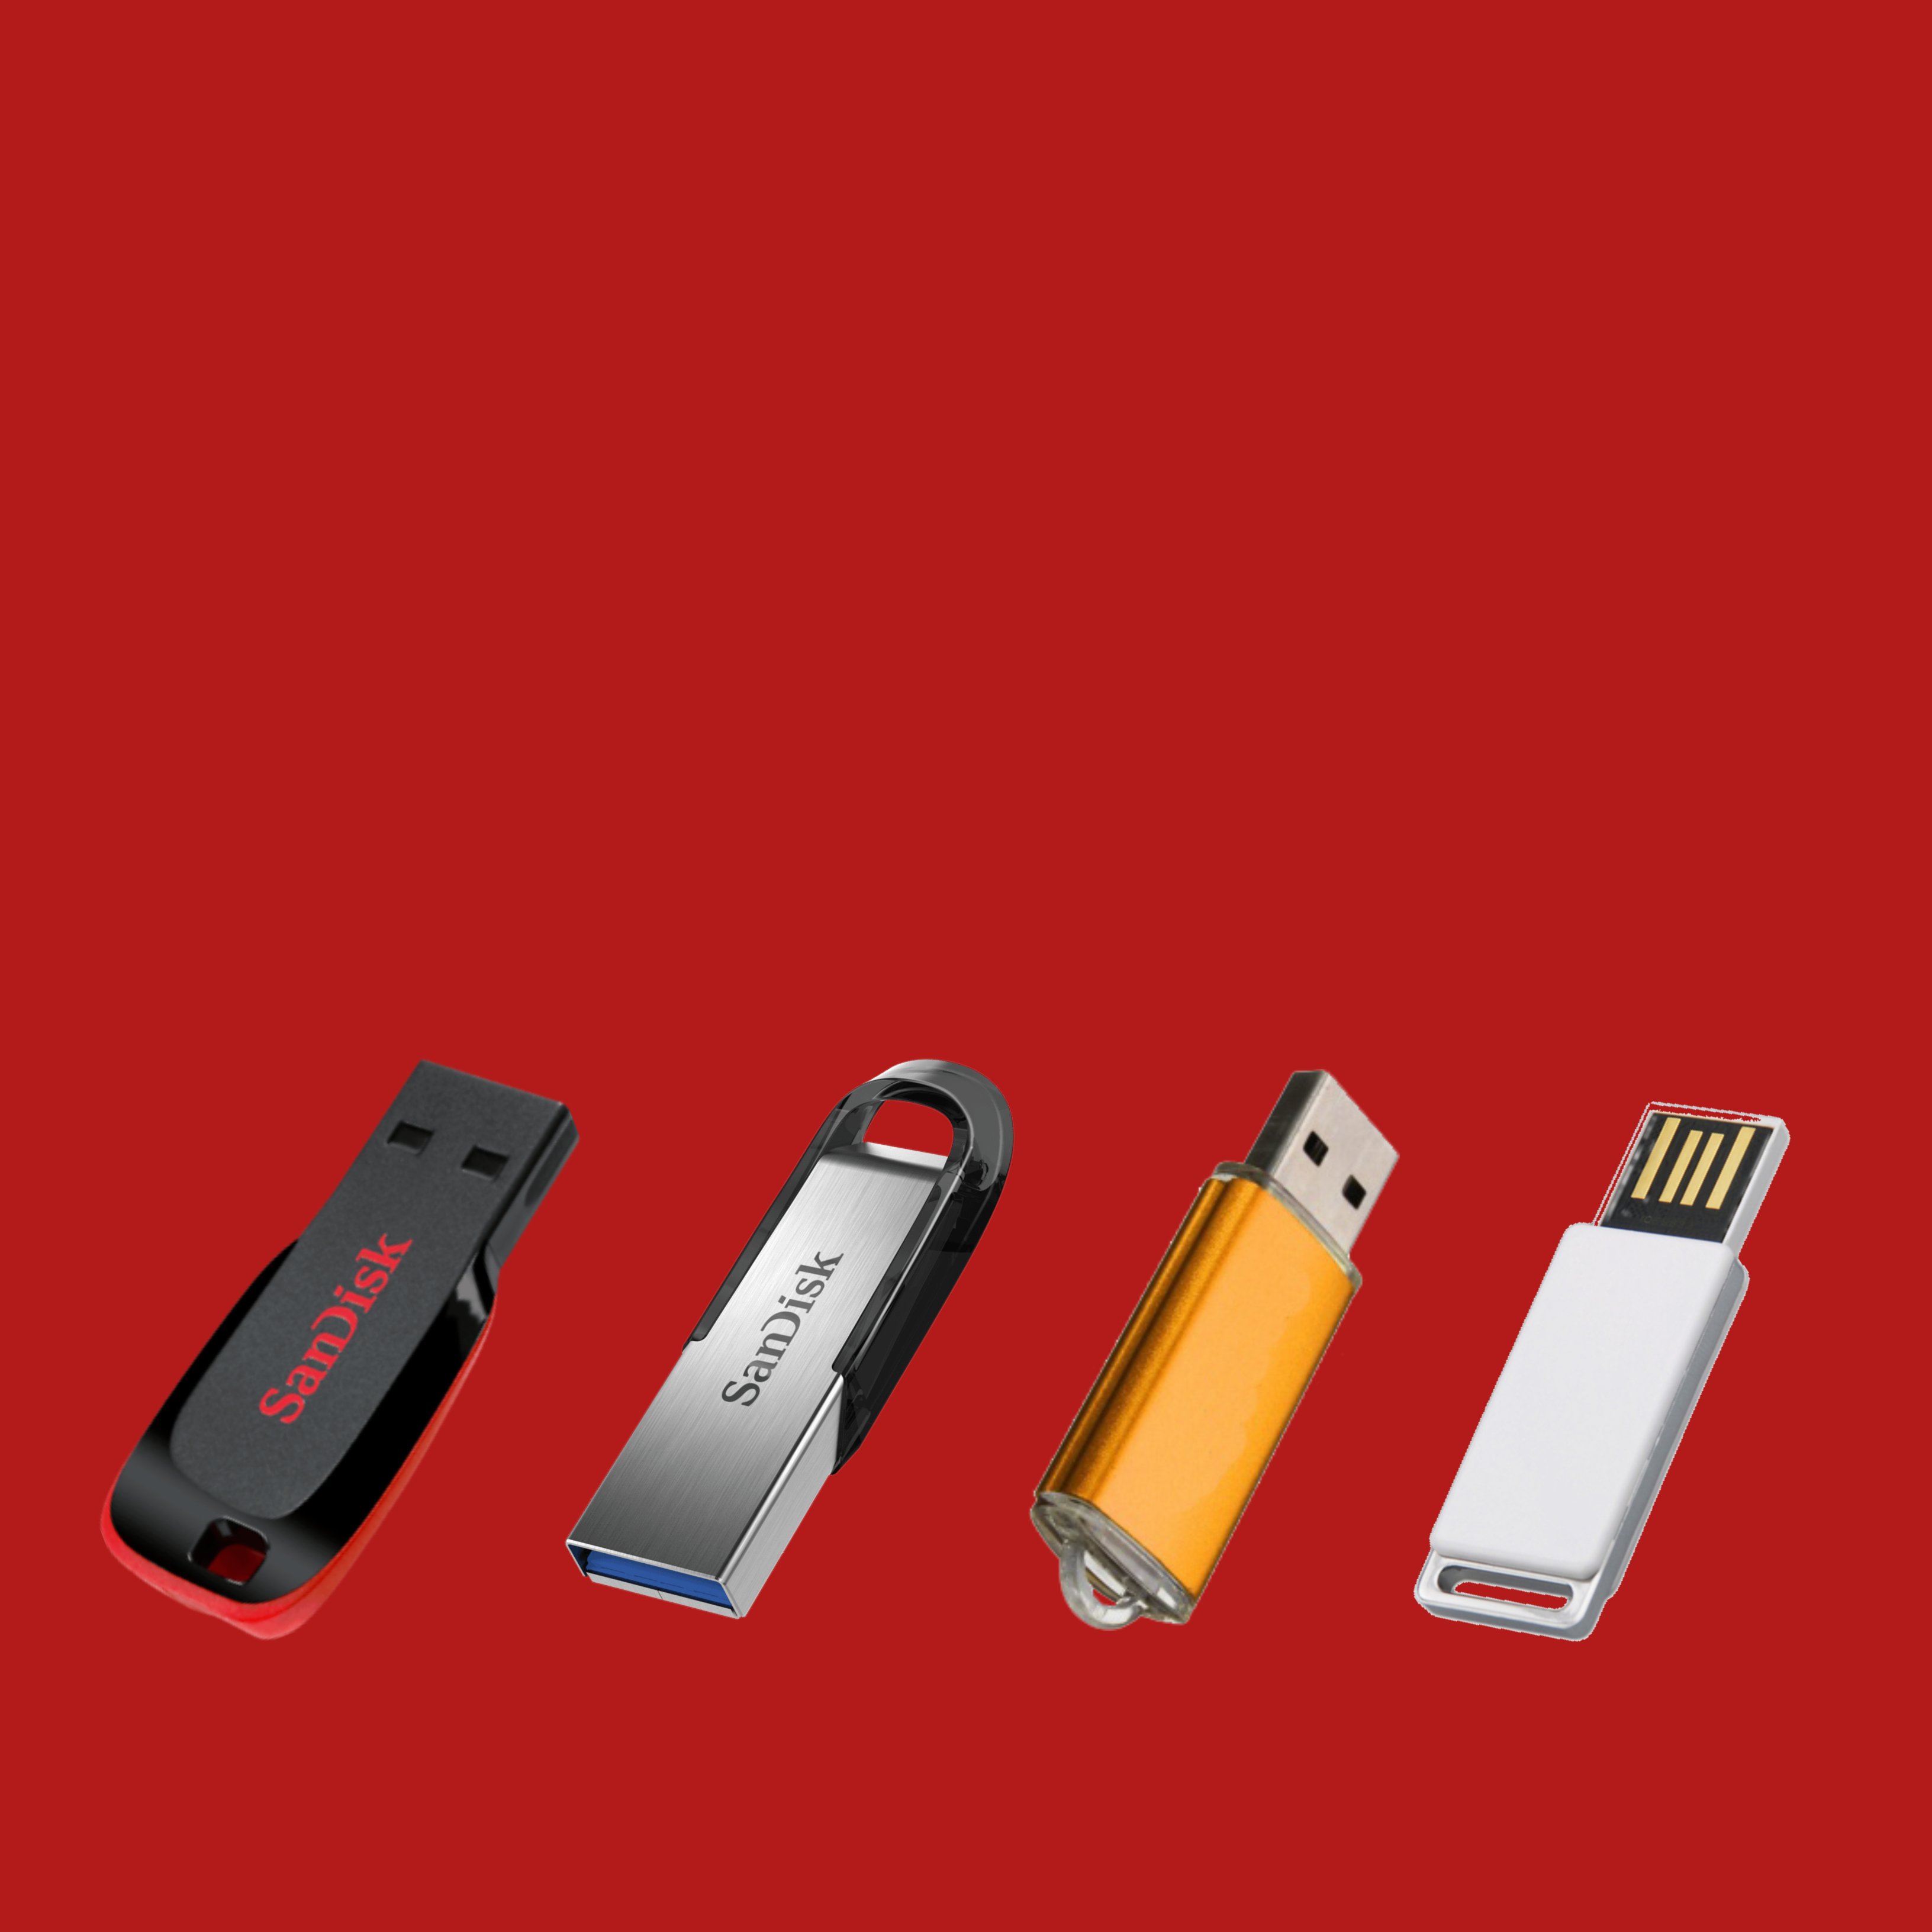 Qué aspectos tienes que tener en cuenta a la hora de comprar una memoria USB